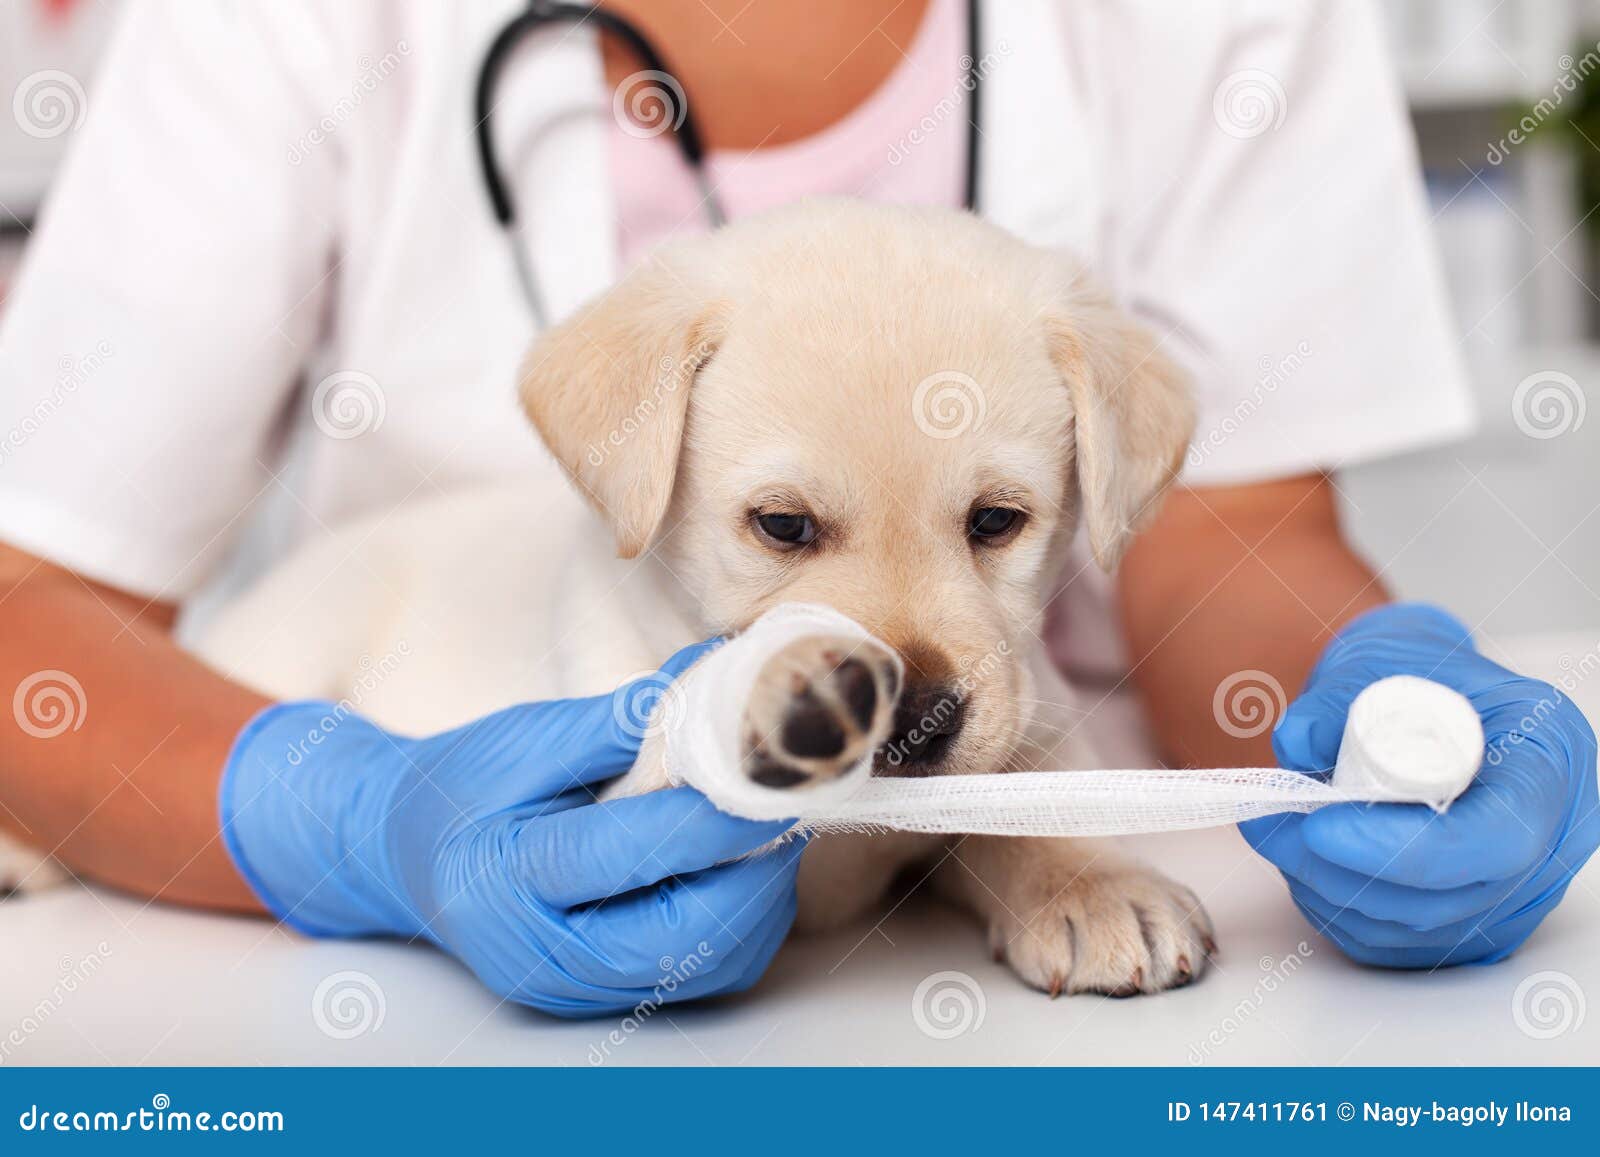 Почему собака хромает. Терапия животных. Ветеринарная клиника.